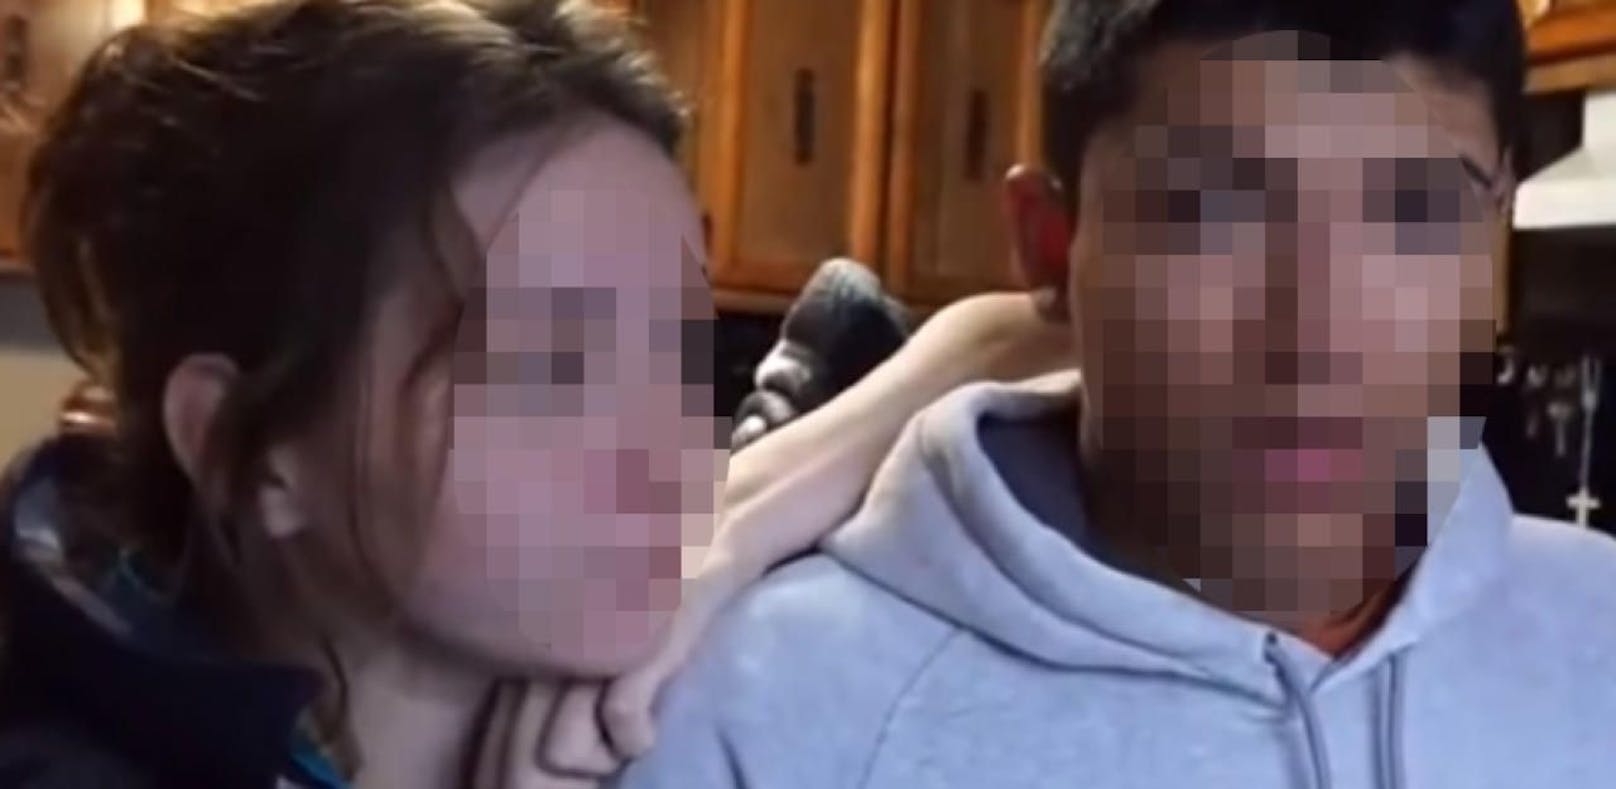 Die damals mit dem zweiten Kind Schwangere erschoss ihren Freund beim Versuch, einen YouTube-Prank zu drehen.